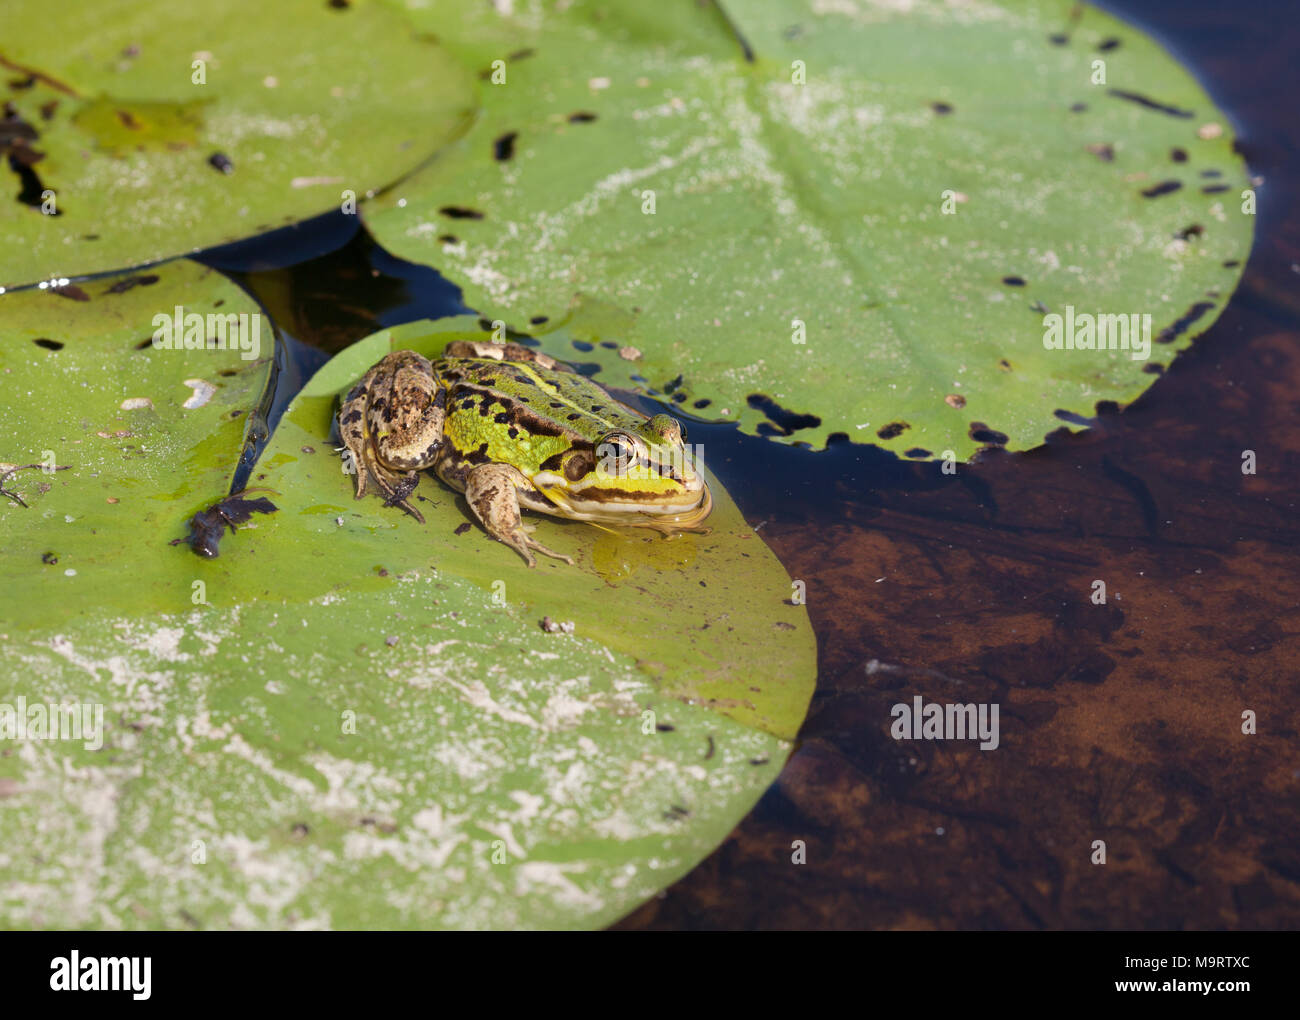 Tête de l'eau vert grenouille (Rana lessonae), close up, selective focus on head Banque D'Images